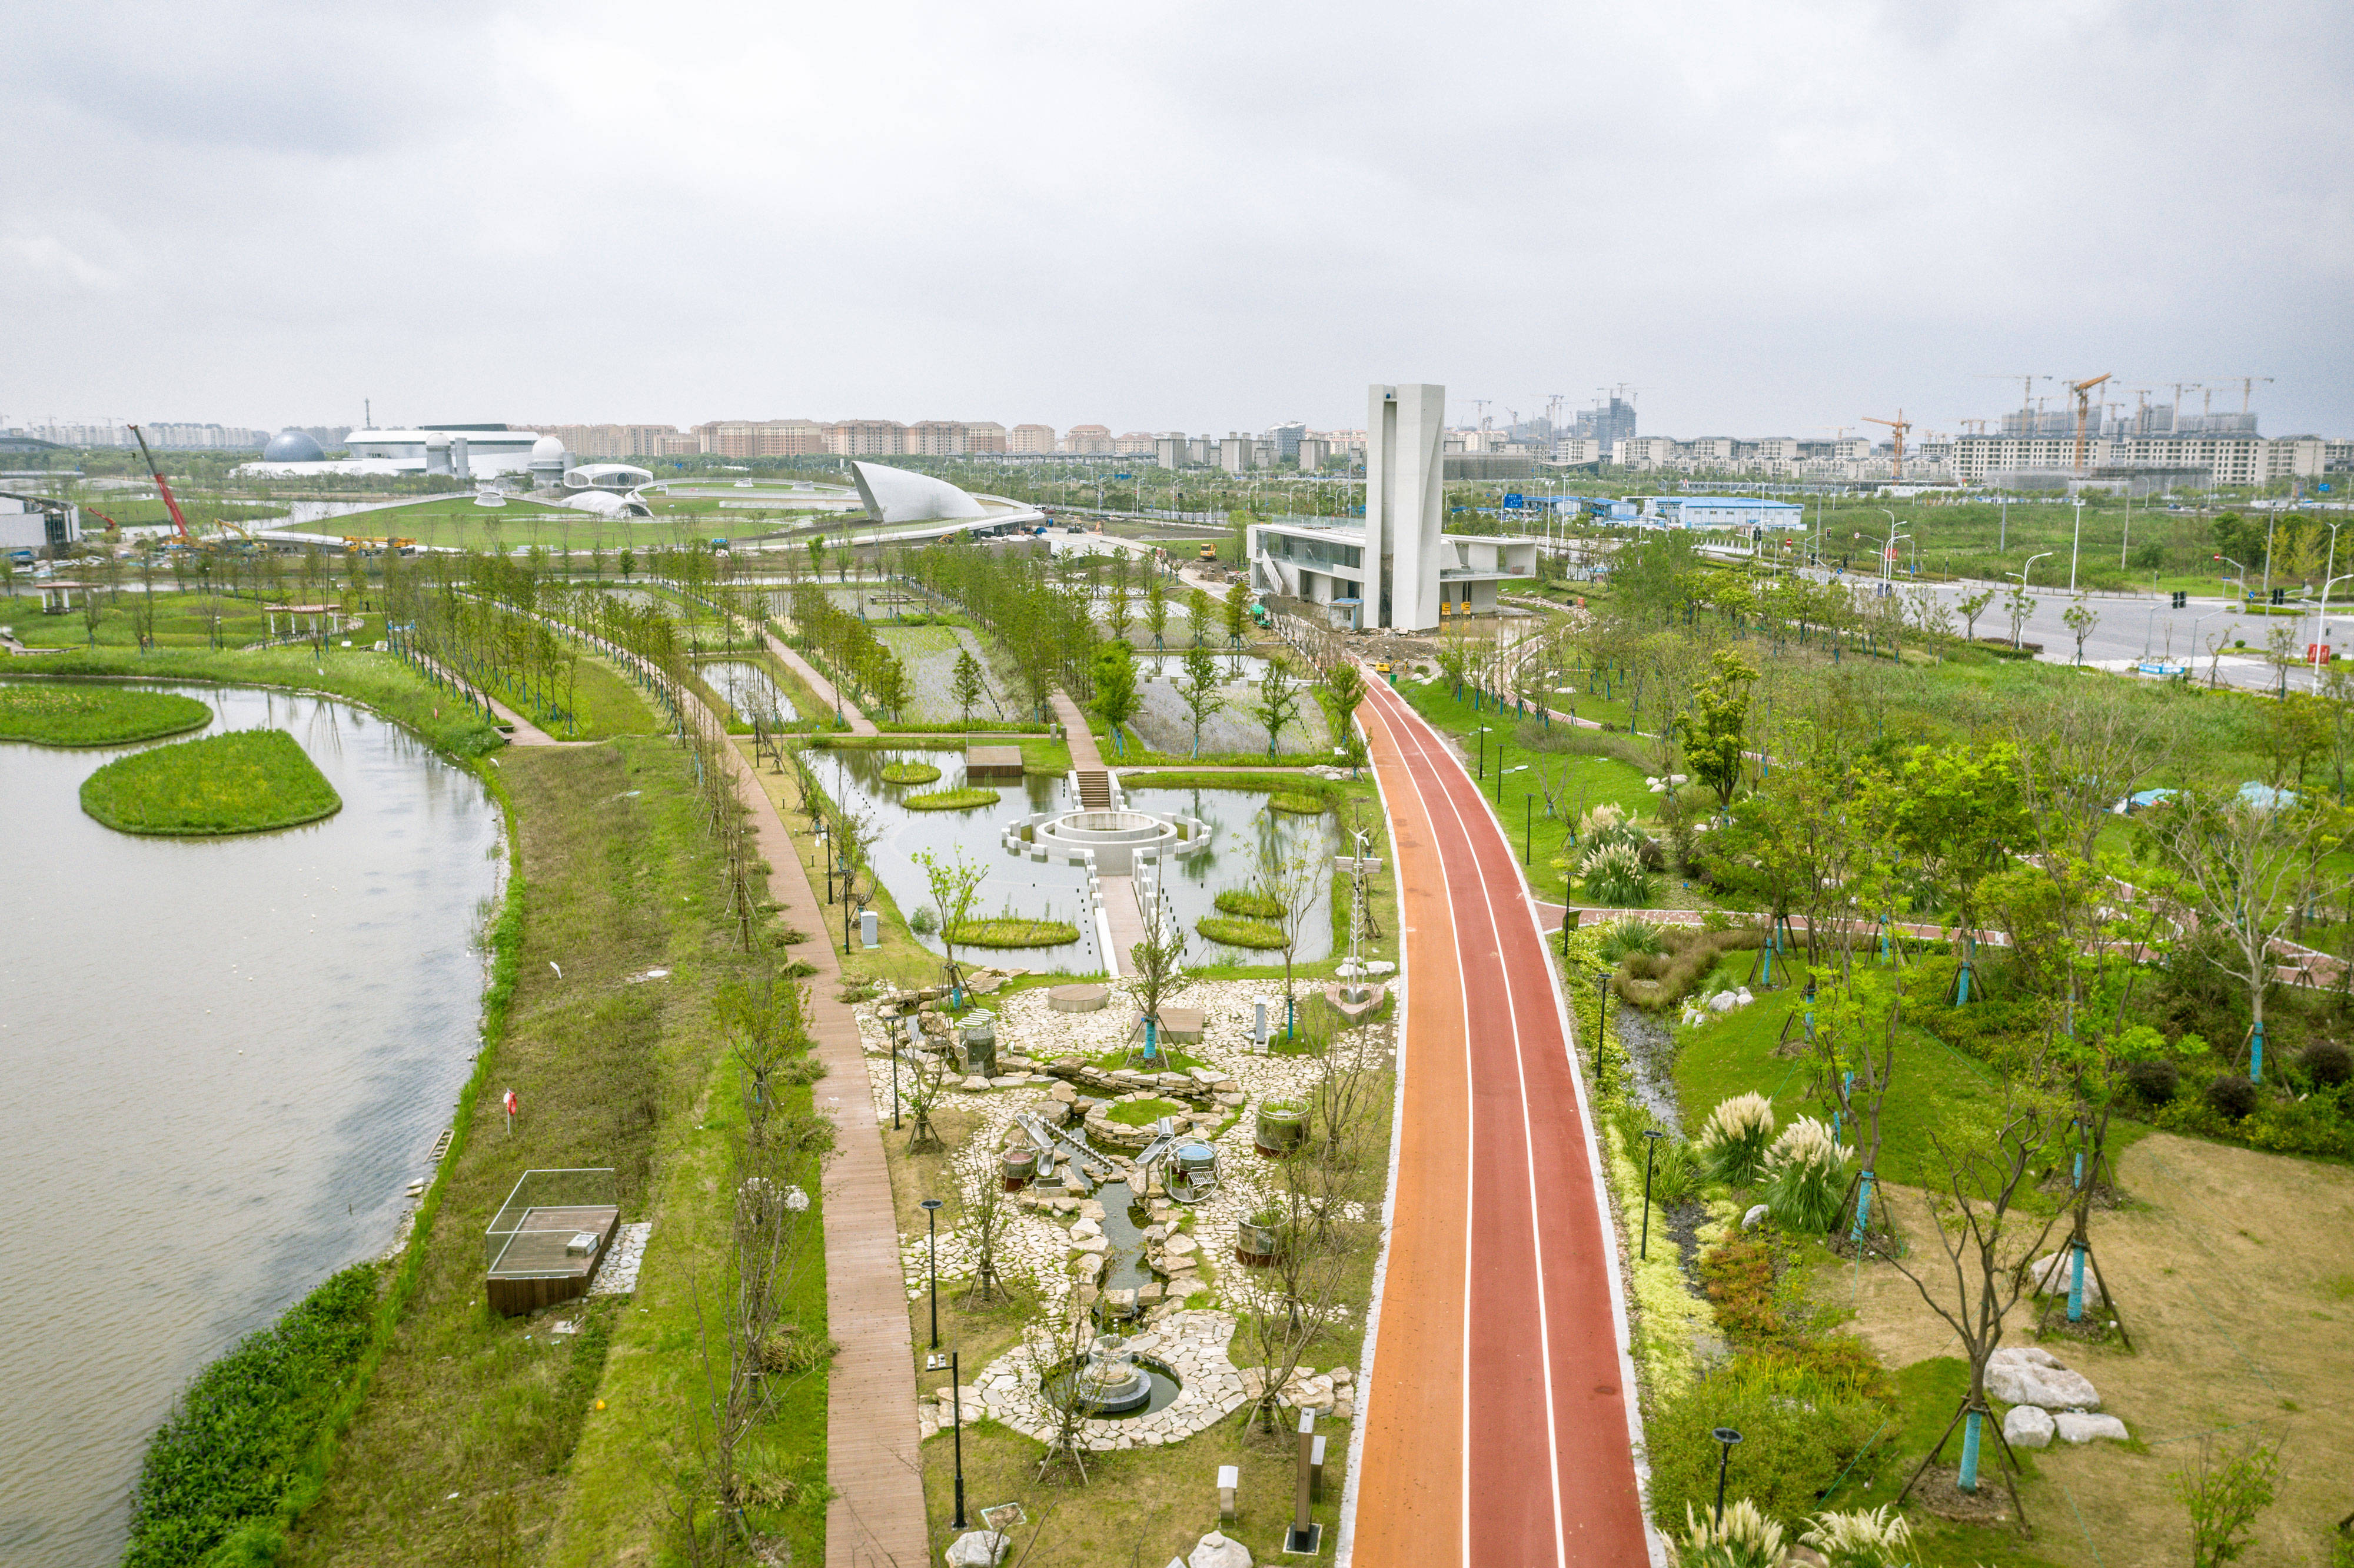 上海最大海绵公园开园试运行占地54公顷紧邻上海天文馆